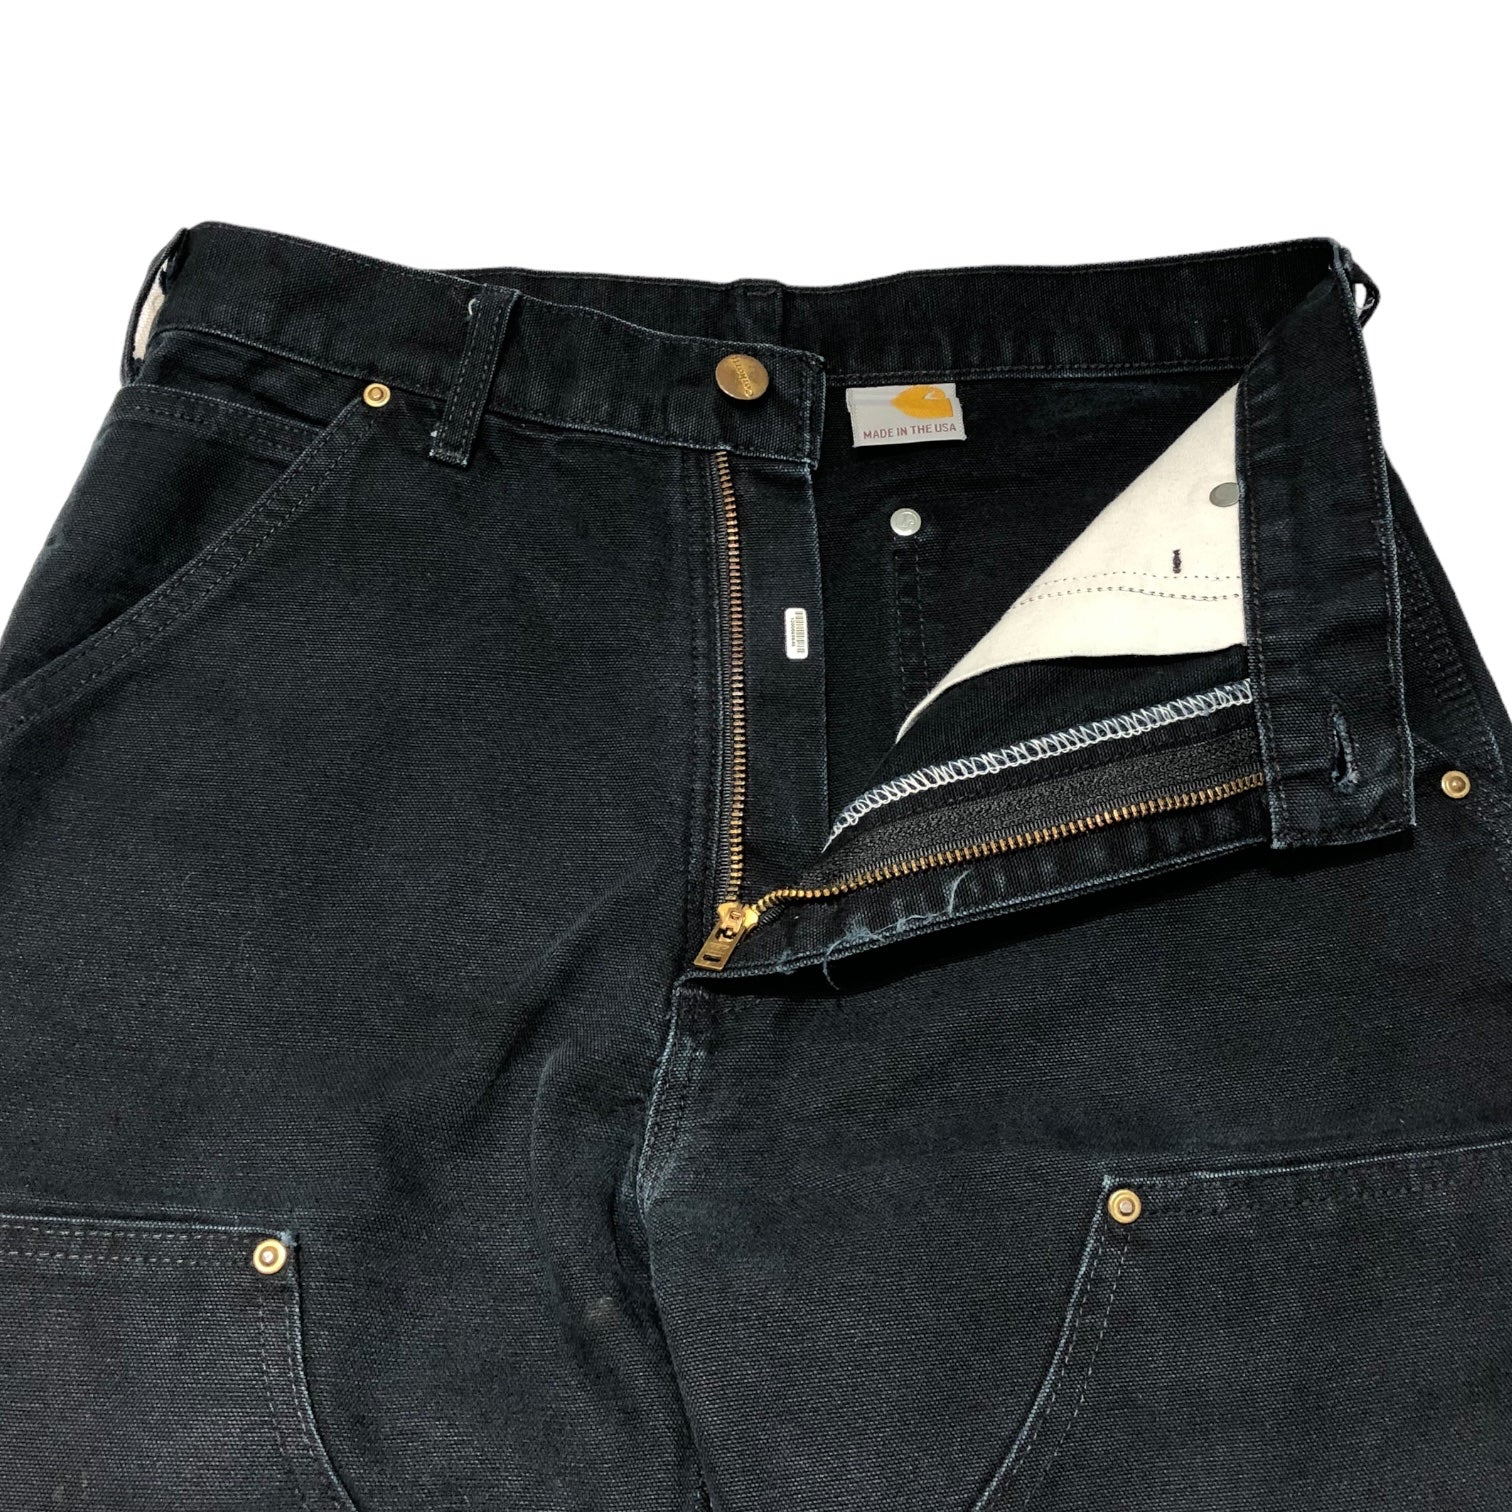 carhartt(カーハート) double knee painter pants ダブルニー ペインター パンツ USA製 29×34 ブラック ダック地 ワーク